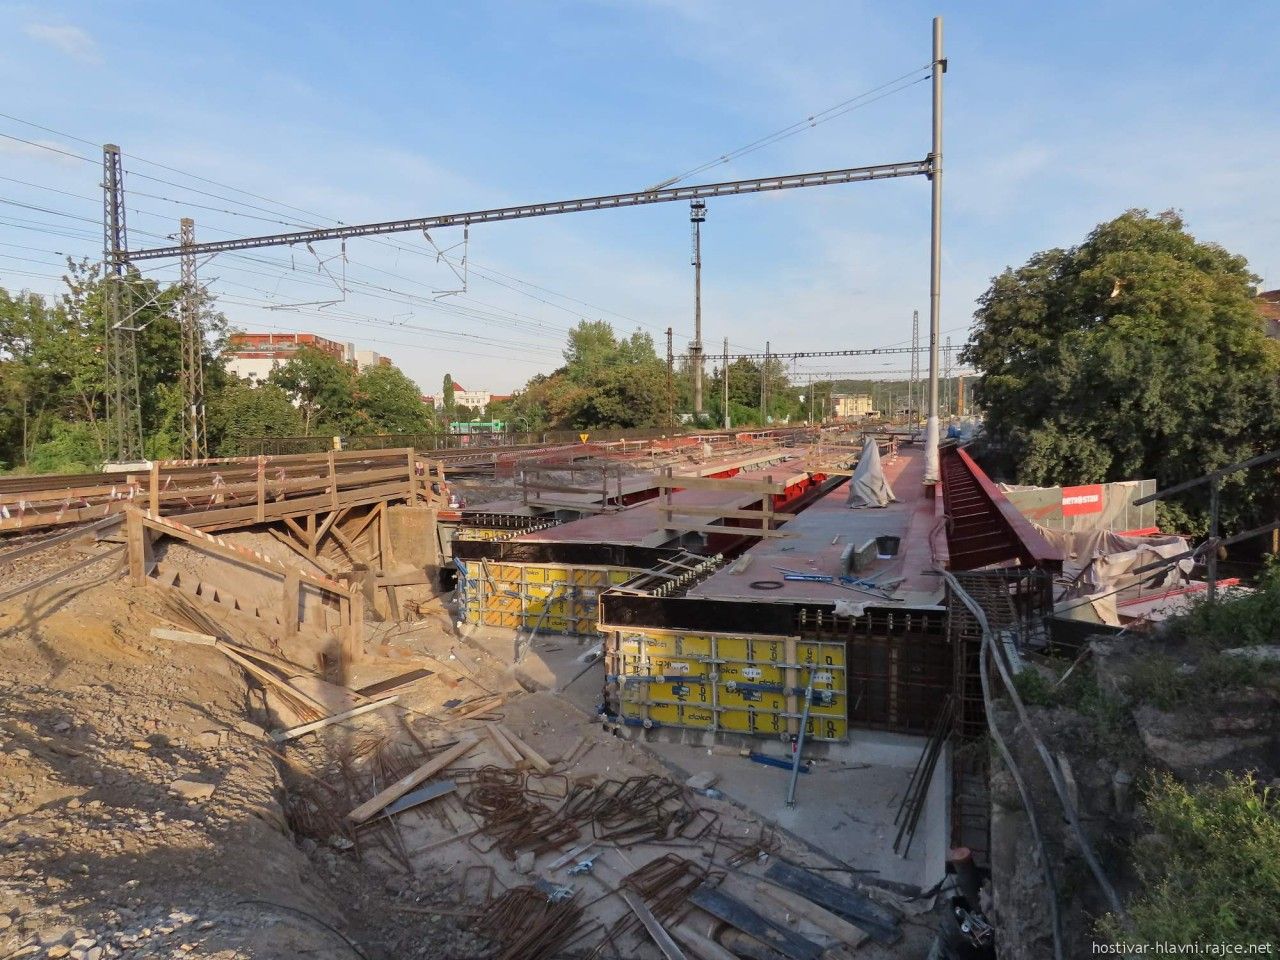 Zpadn opra mostu Otakarova 20.9.2019